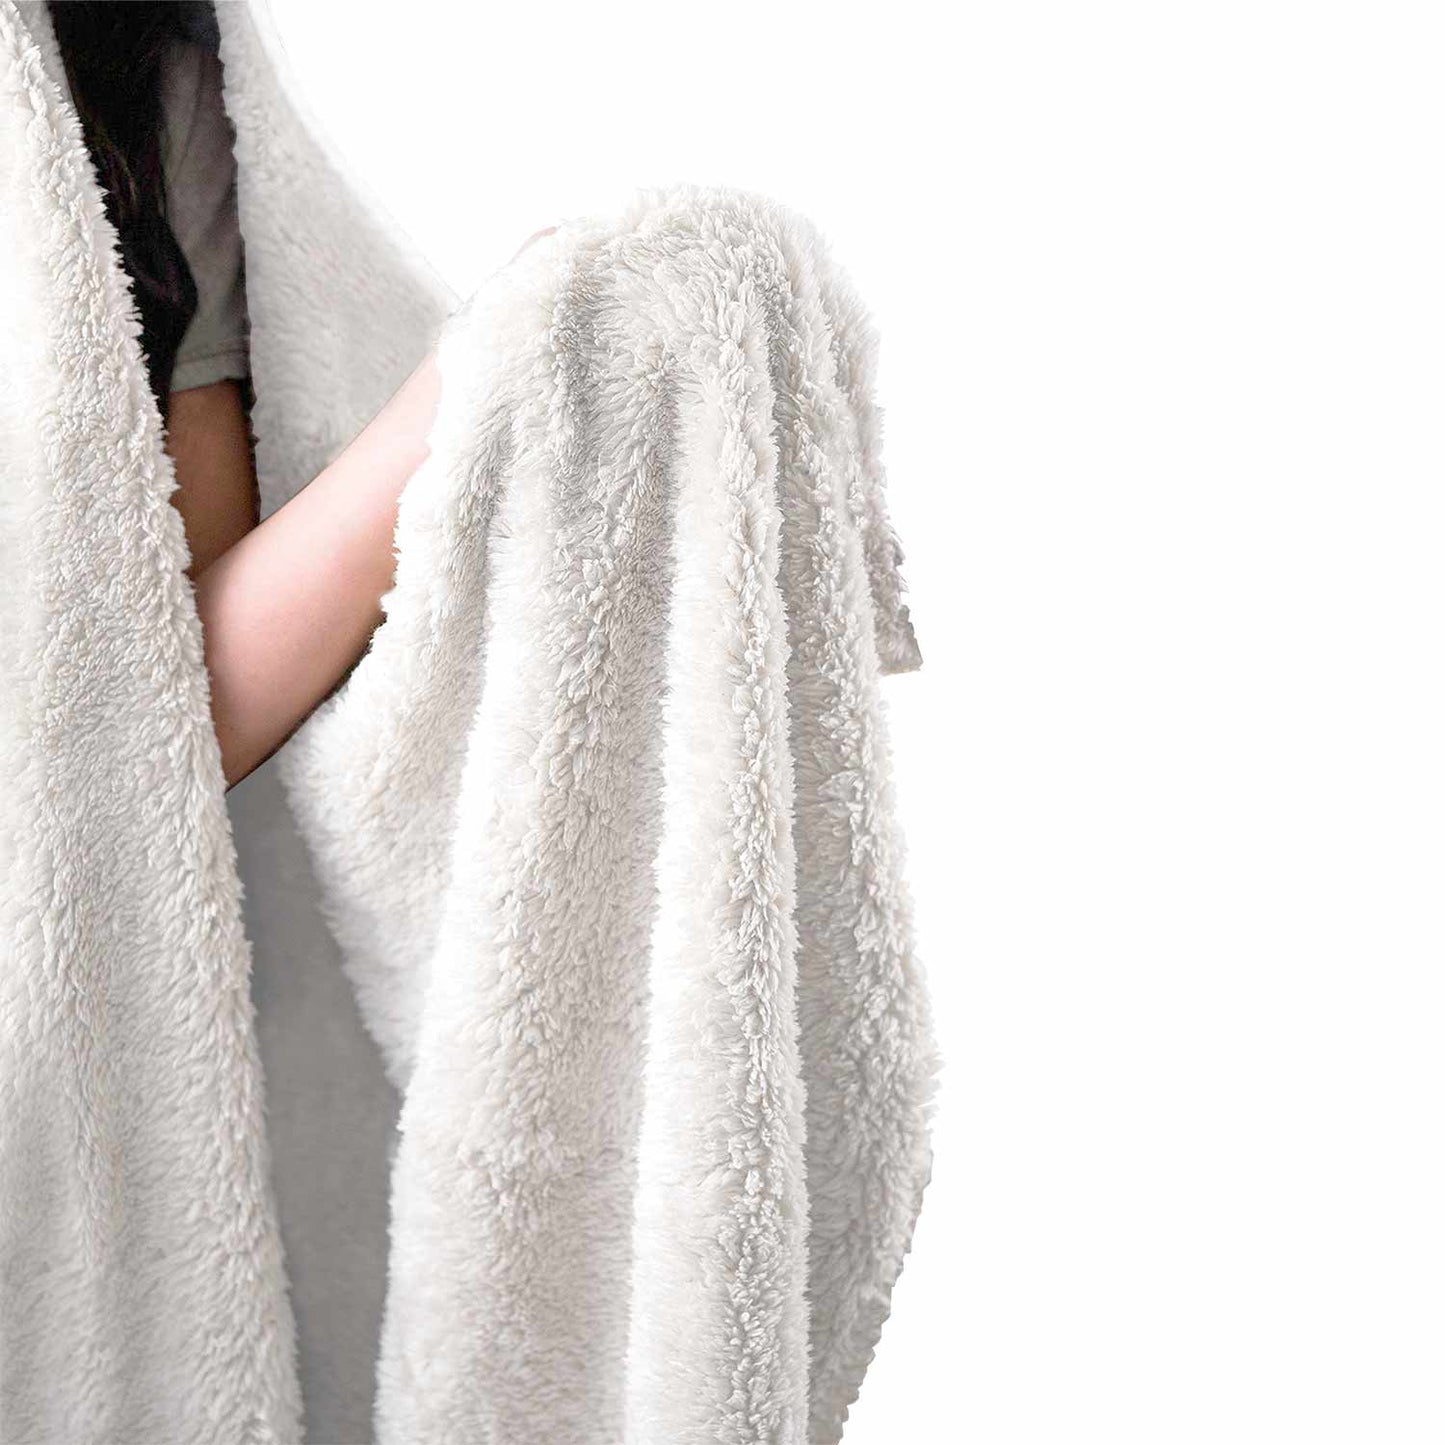 Gamer Girl - Video Game Hooded Blanket